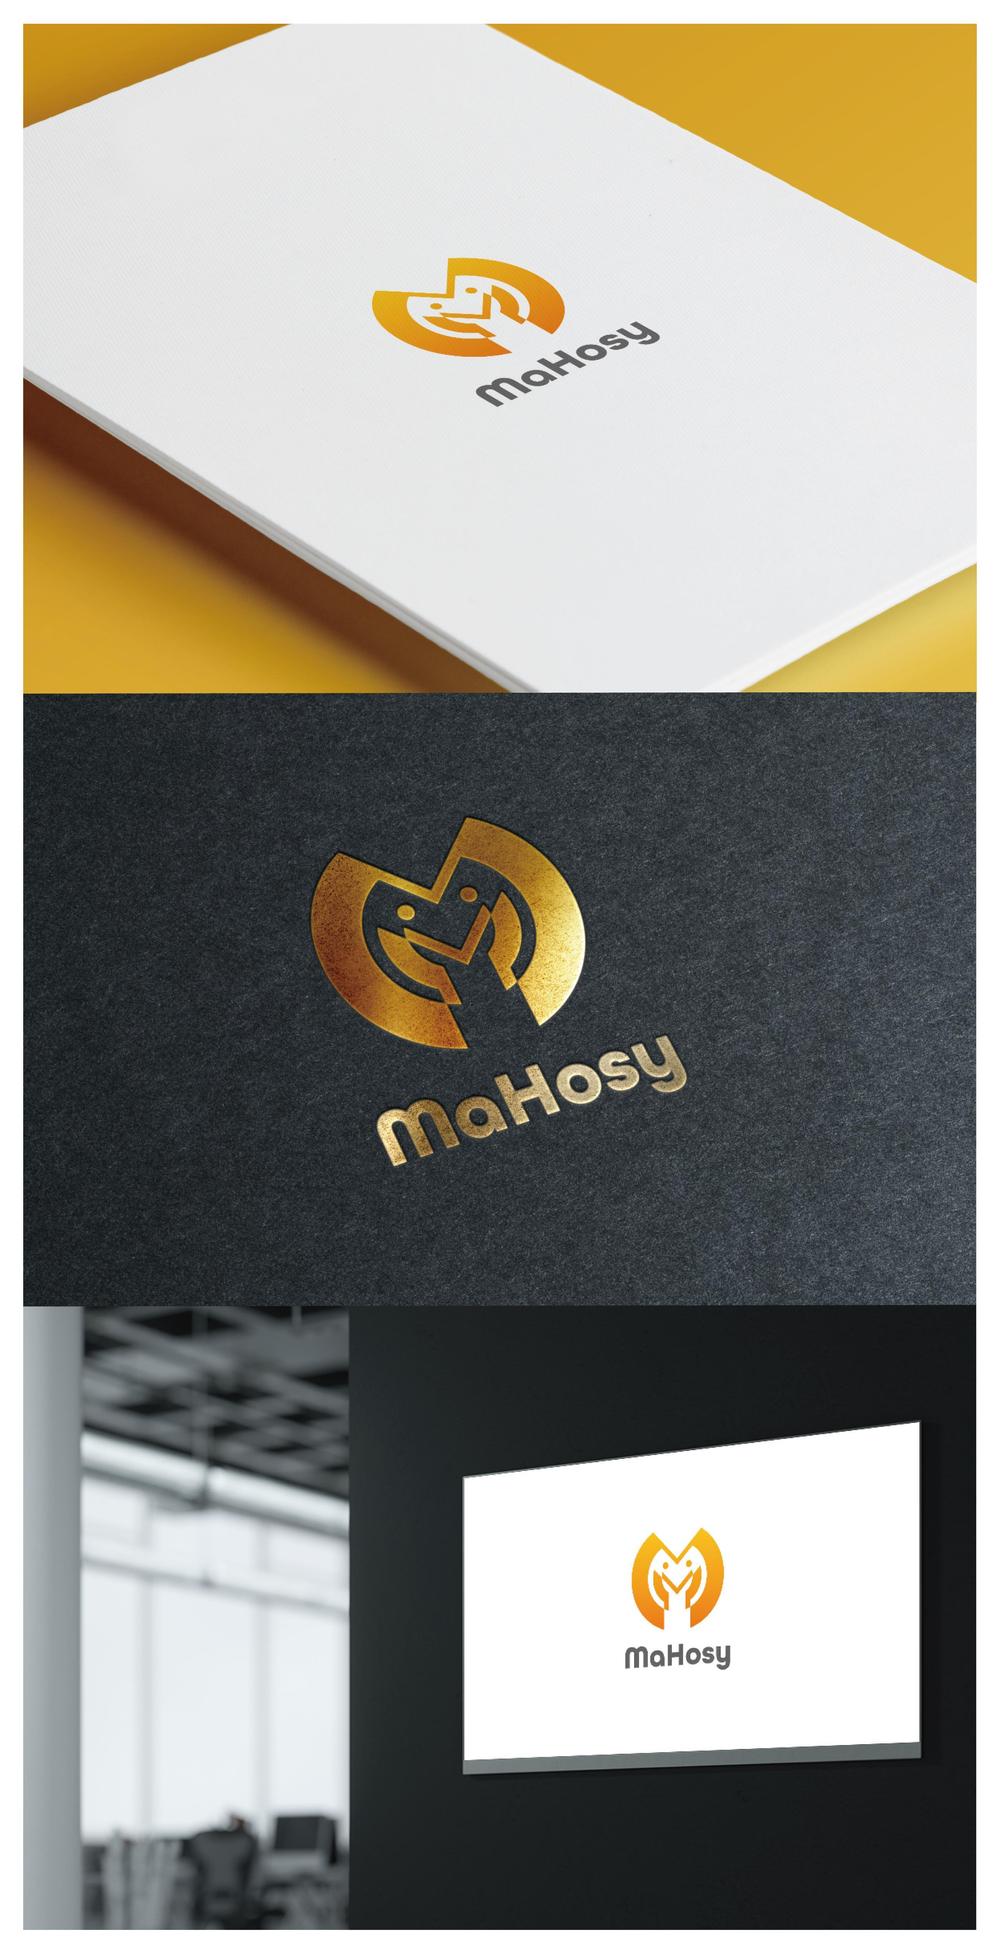 MaHosy_logo01_01.jpg